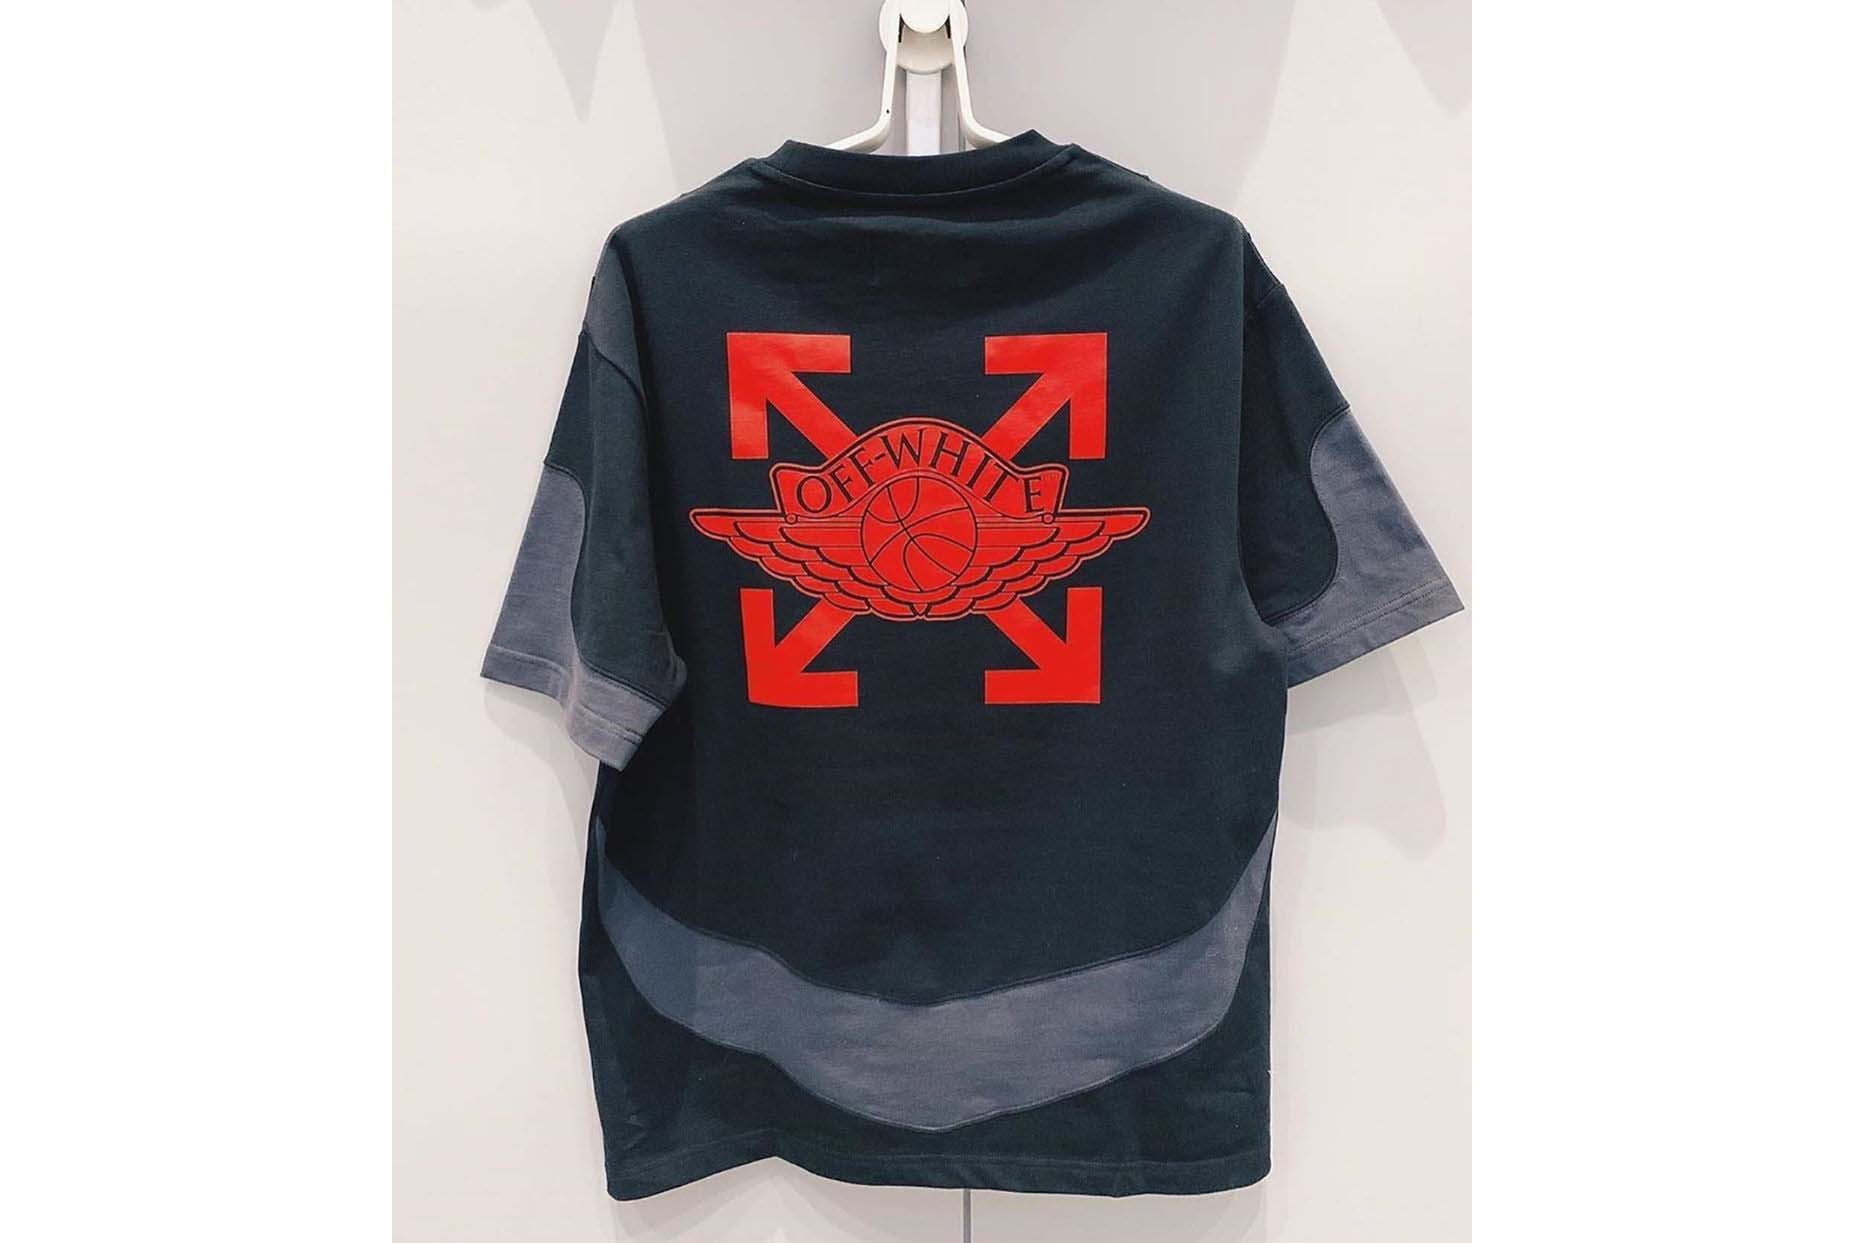 오프 화이트 x 조던 브랜드 협업 후디 및 티셔츠 실물 이미지 공개, 버질 아블로, 에어 조던, 나이키